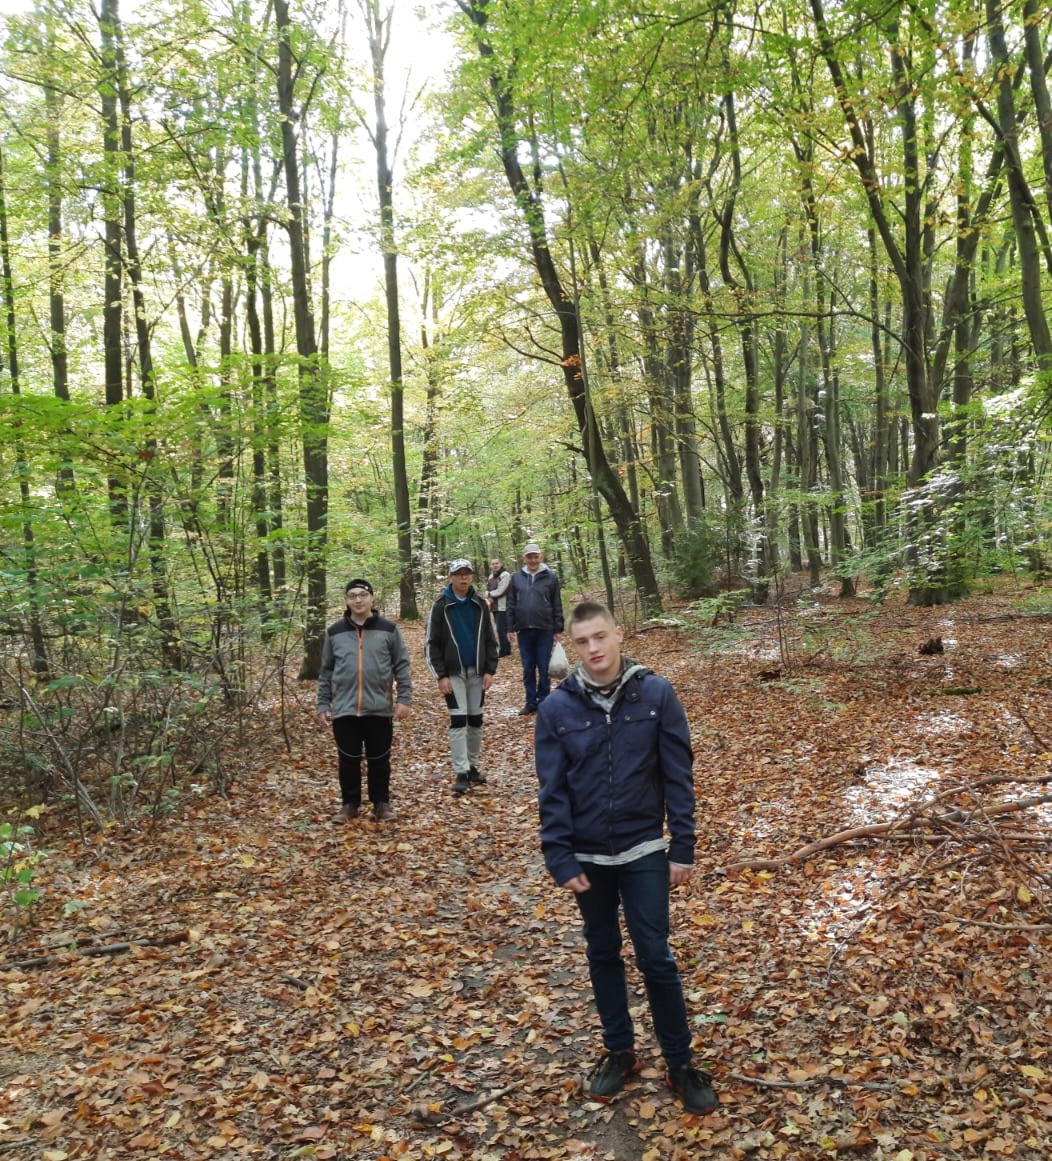 Zdjęcie grupowe ukazujące podopiecznych spacerujących leśną ścieżką pośród zielonych drzew. Ziemia usłana jest brązowymi już opadniętymi listkami.